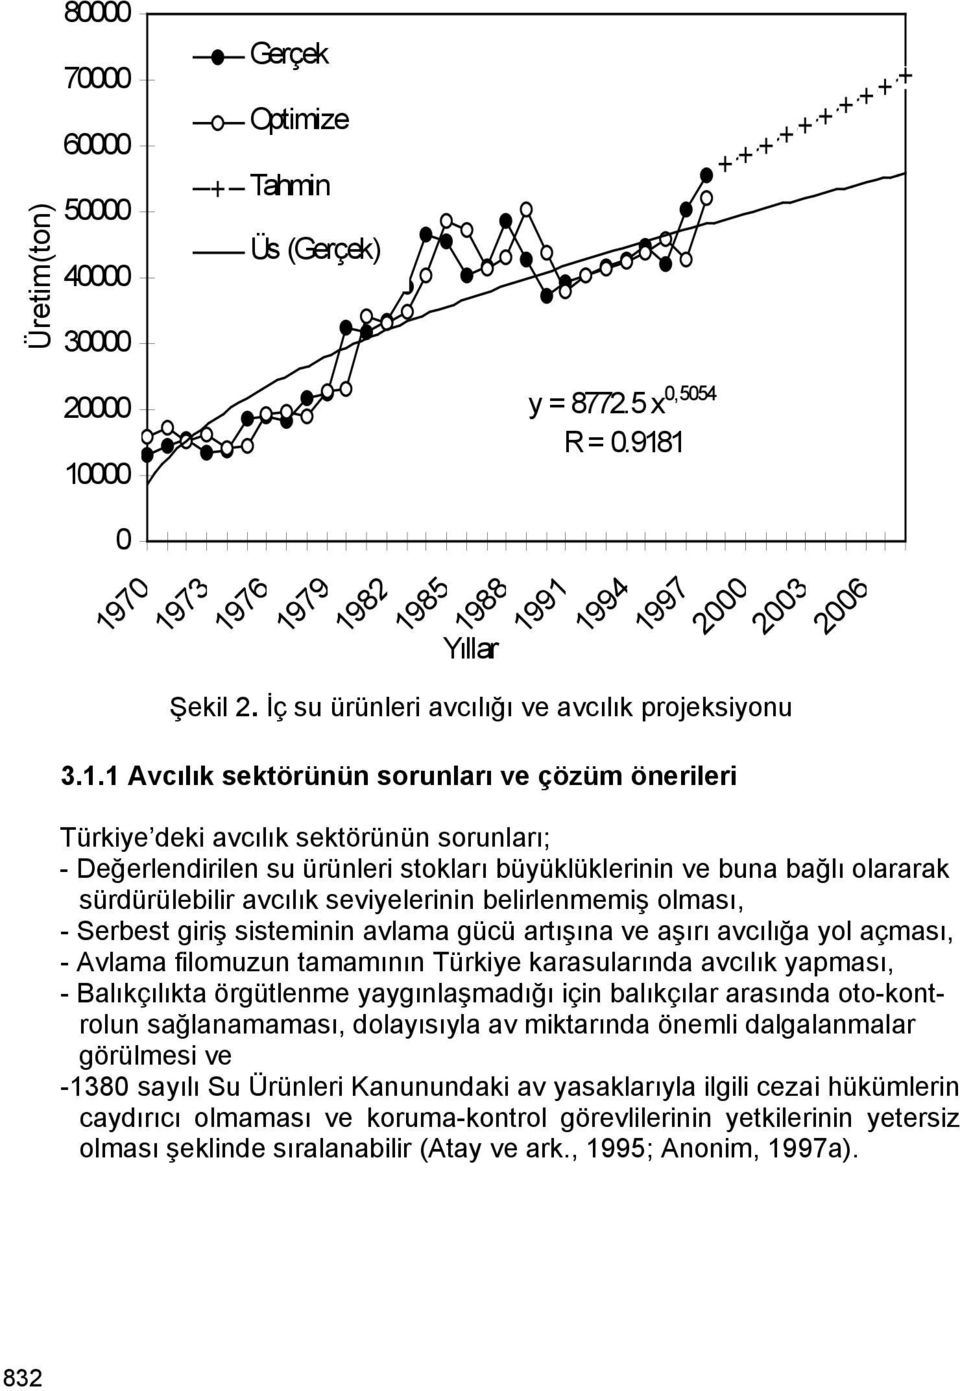 1 Avcılık sektörünün sorunları ve çözüm önerileri 1991 1994 1997 2000 2003 2006 Türkiye deki avcılık sektörünün sorunları; - Değerlendirilen su ürünleri stokları büyüklüklerinin ve buna bağlı